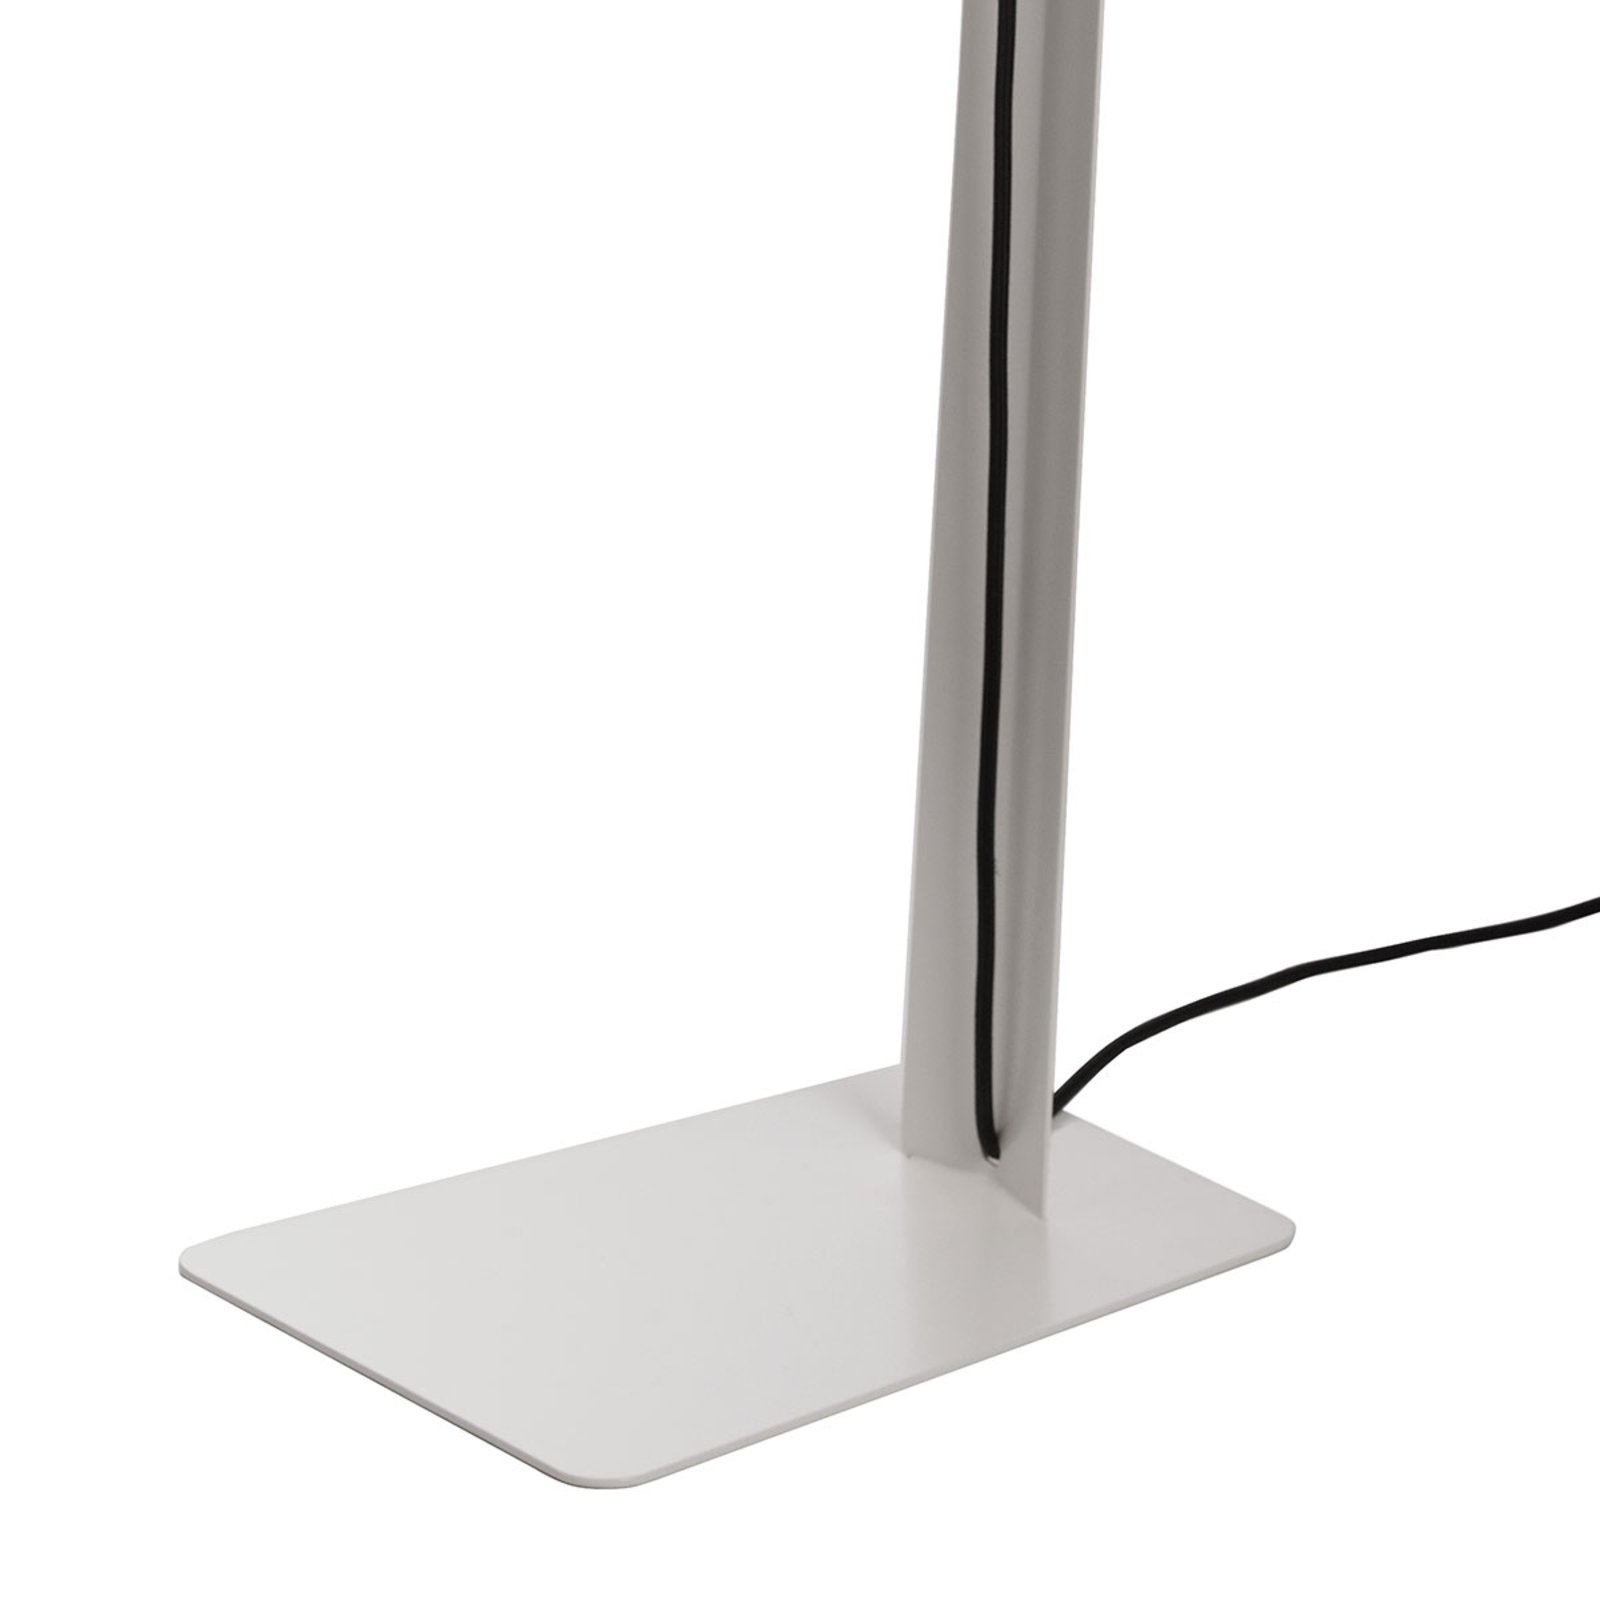 Innolux Pasila lámpara de pie de diseño blanco